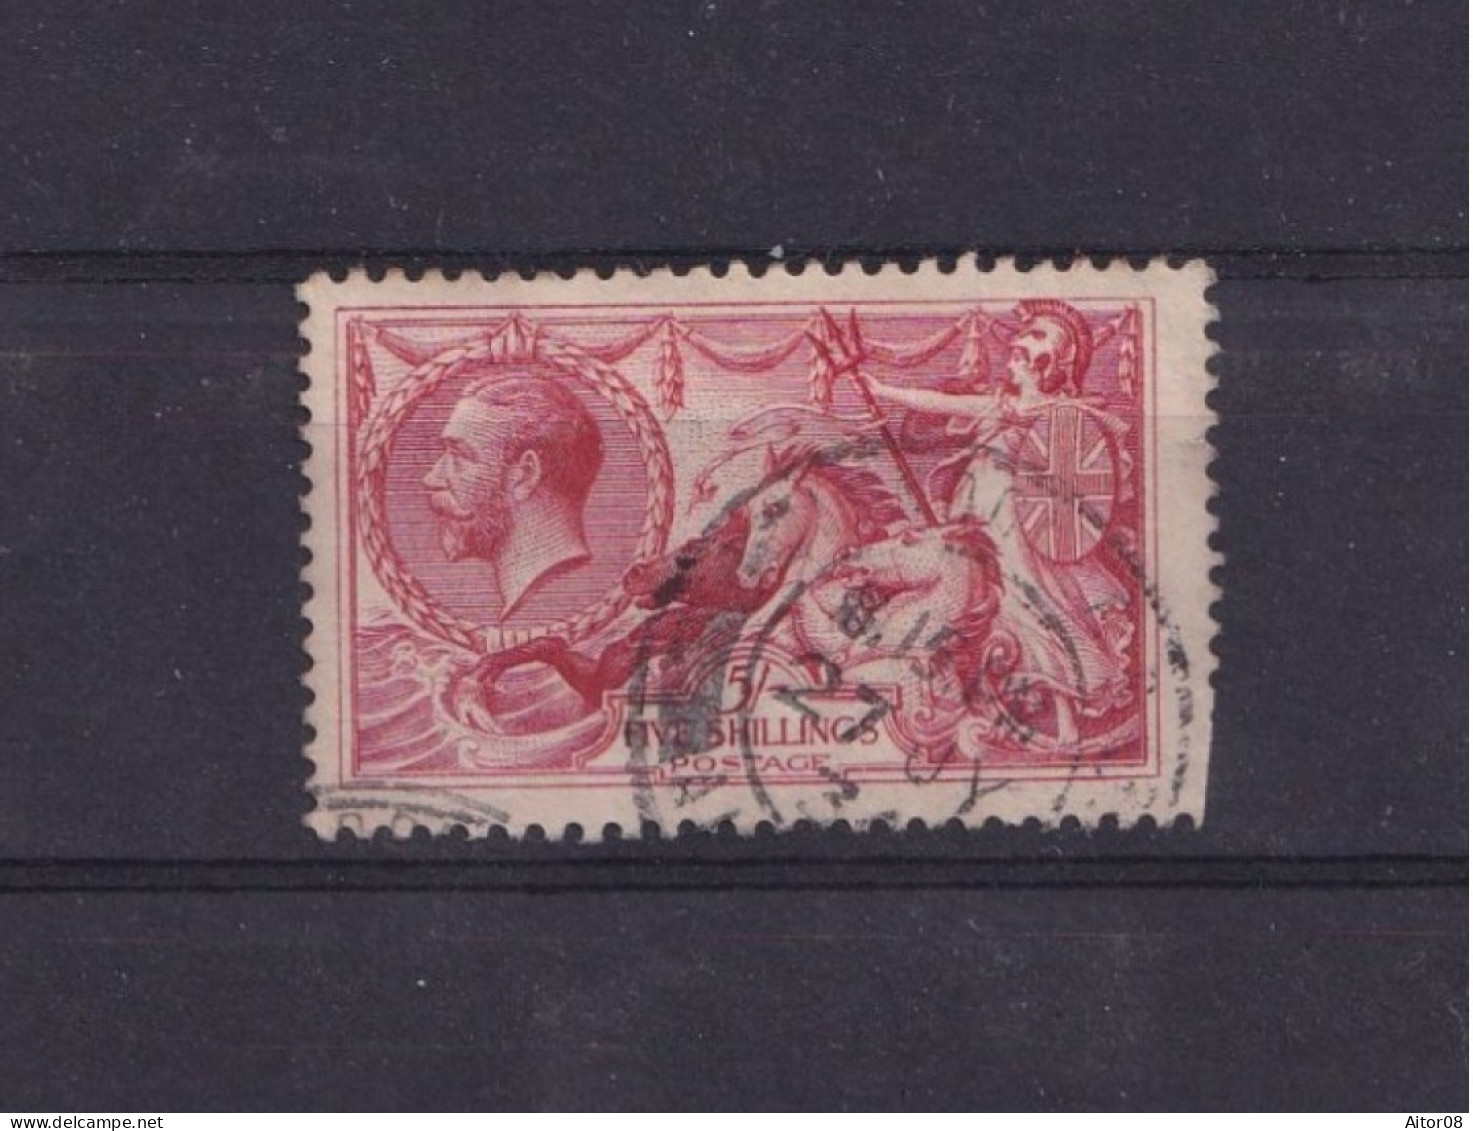 TIMBRE DE 5 SHILLINGS DE 1912/22 N° 154 OBLITERES . COTE 250 EURO. INTERESSANTS.A VOIR - Used Stamps